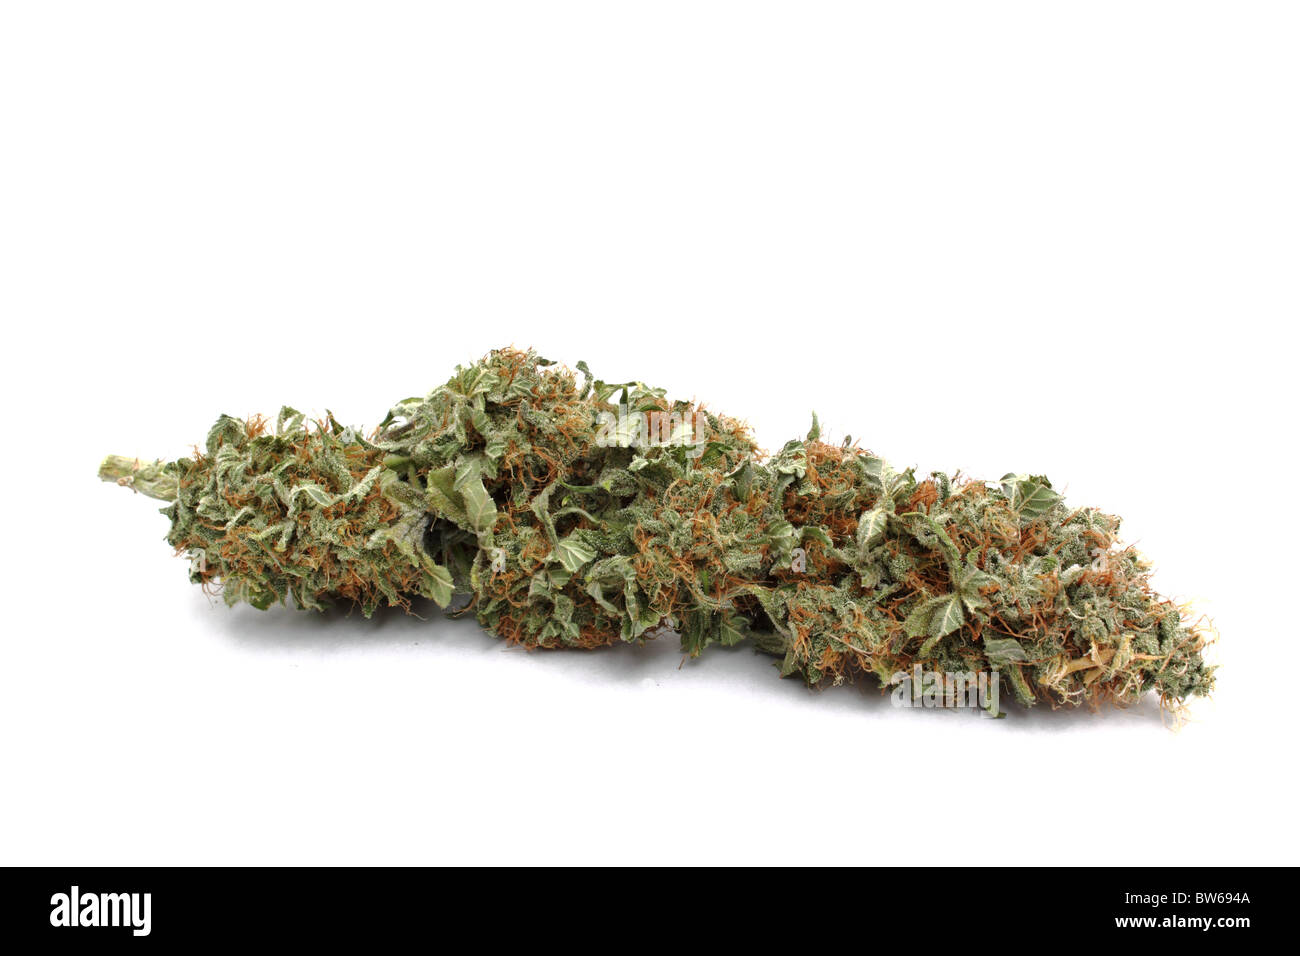 Marijuana ( cannabis ) bud isolated on white background. Stock Photo